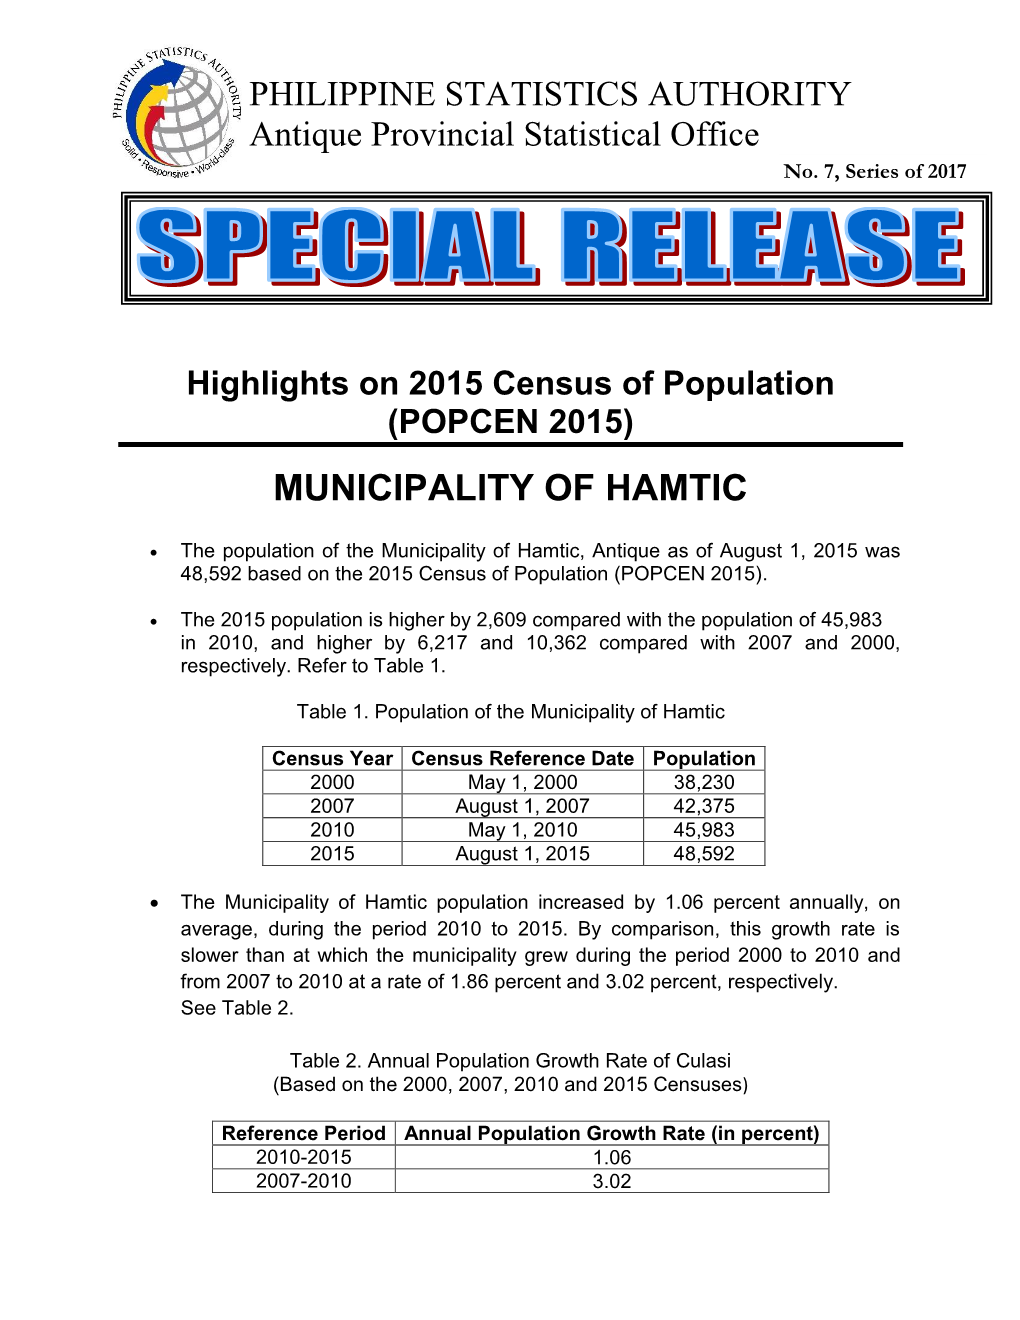 Municipality of Hamtic